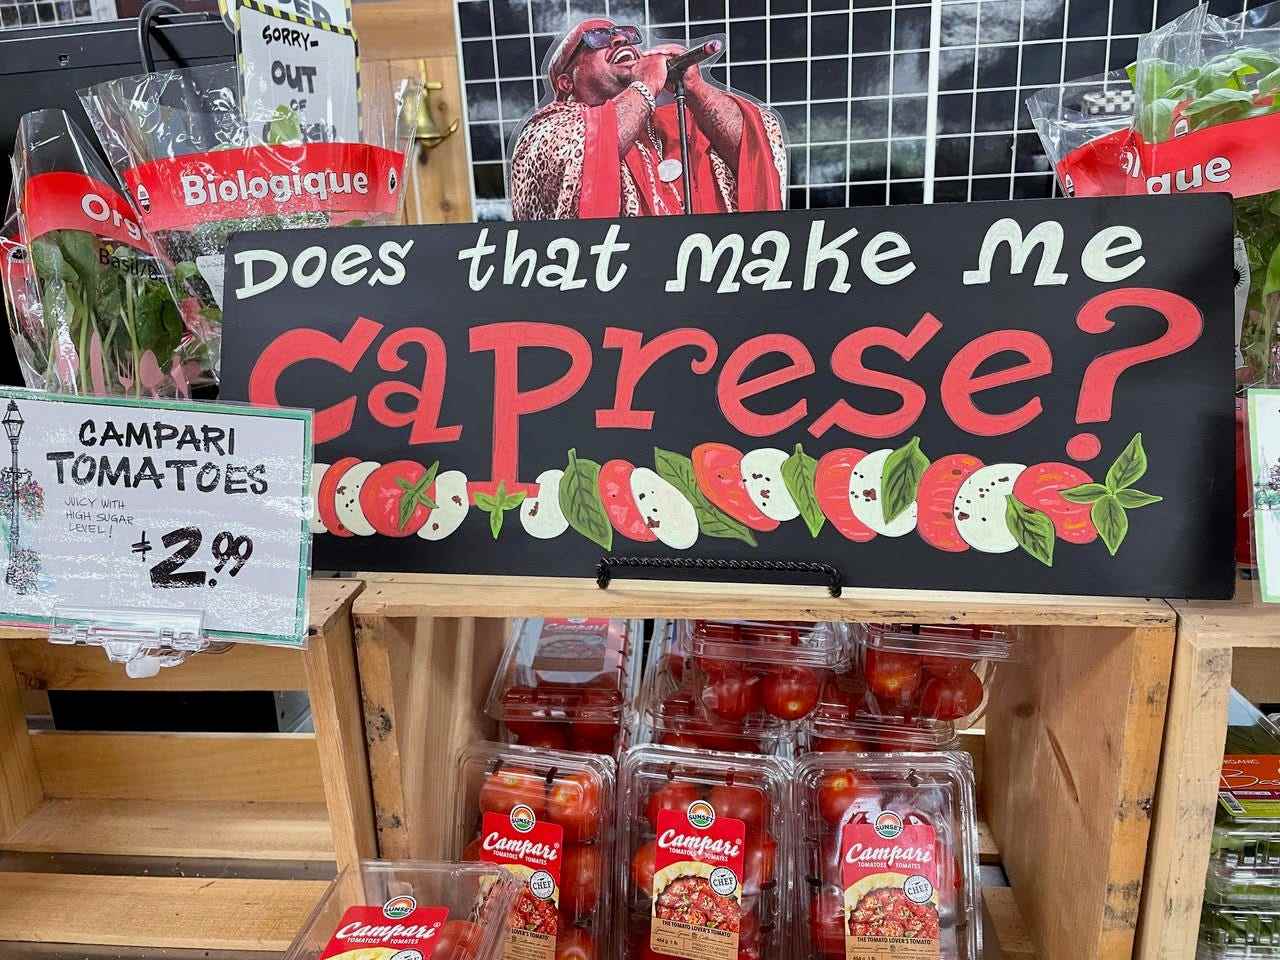 Trader Joe's Campari-Tomaten unter Caprese-Zeichen